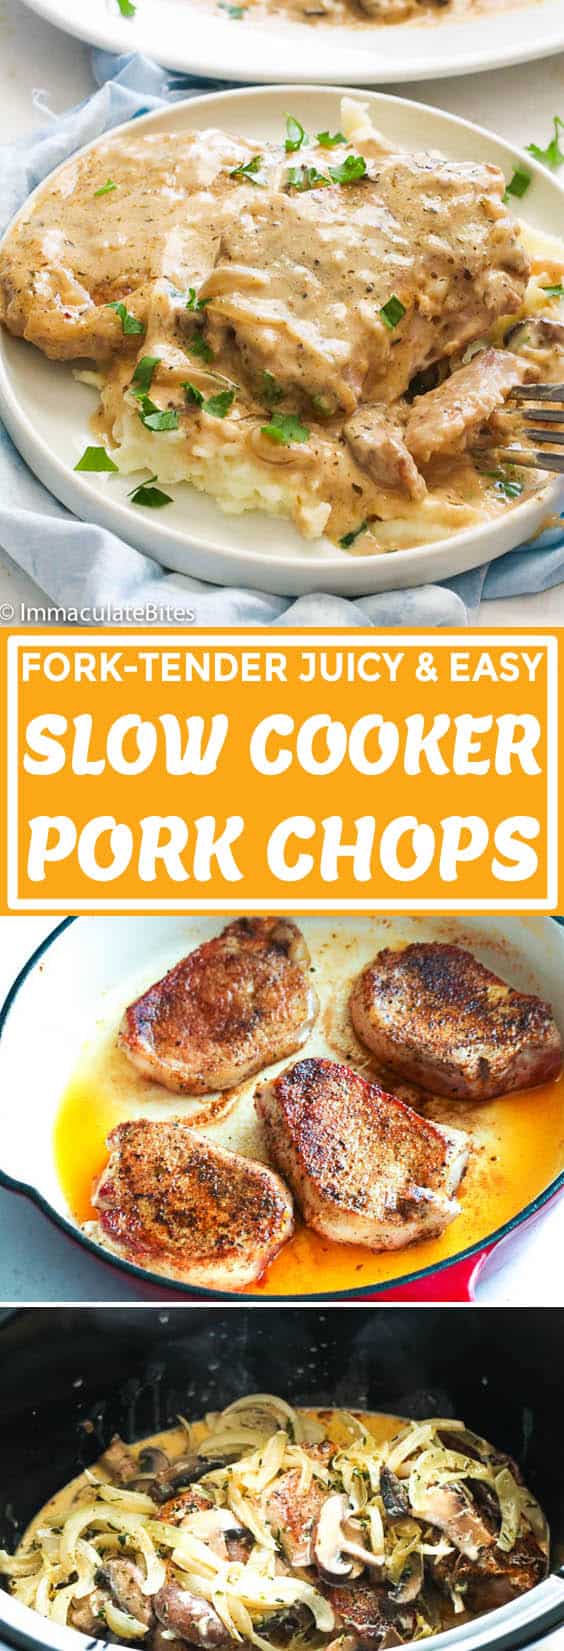 Slow Cooker Pork Chops